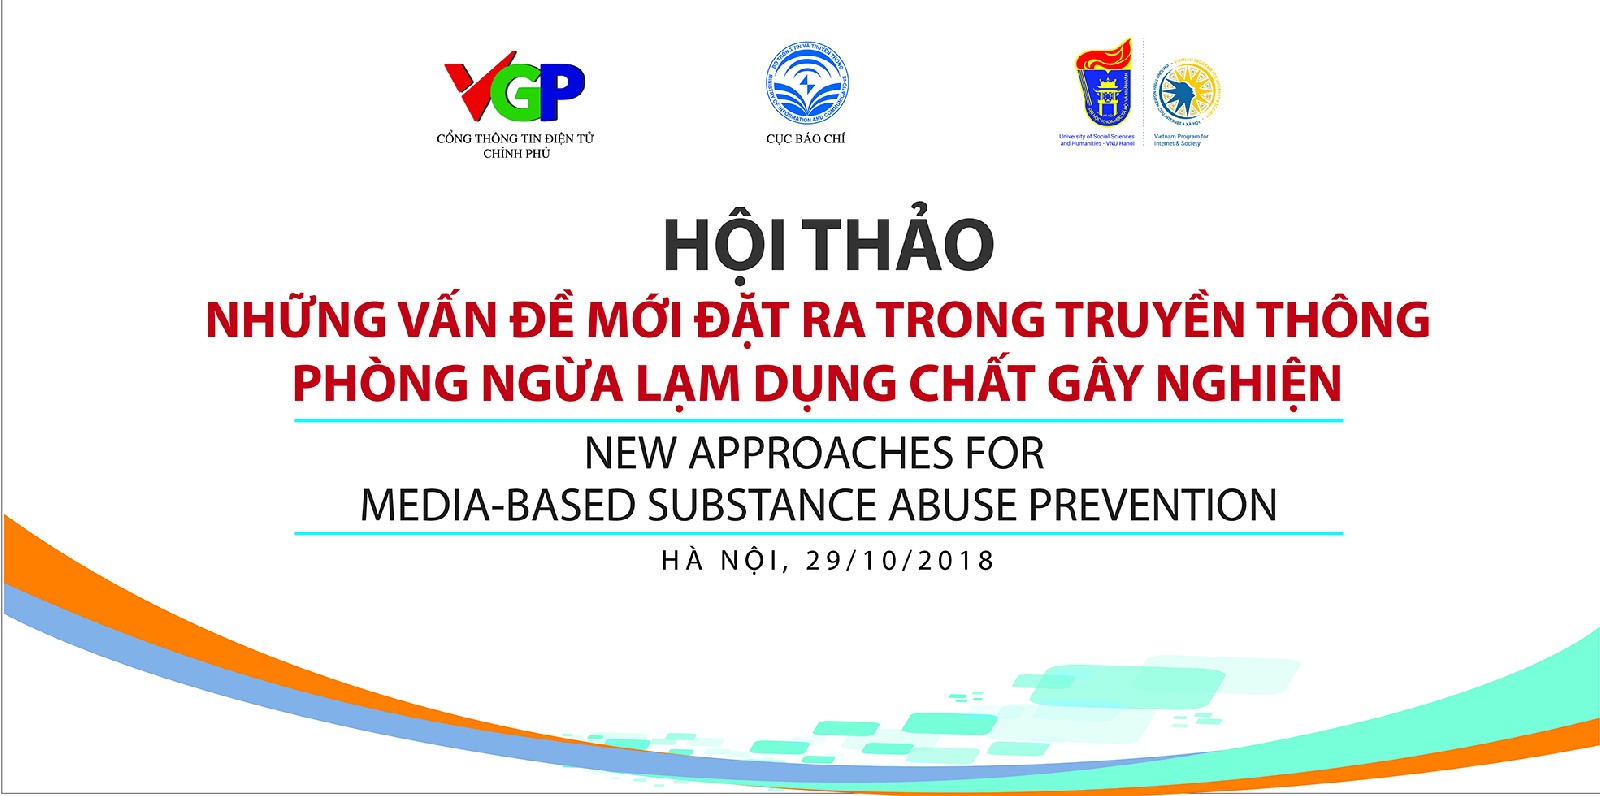 Hội thảo “Những vấn đề mới đặt ra trong truyền thông phòng ngừa lạm dụng chất gây nghiện”